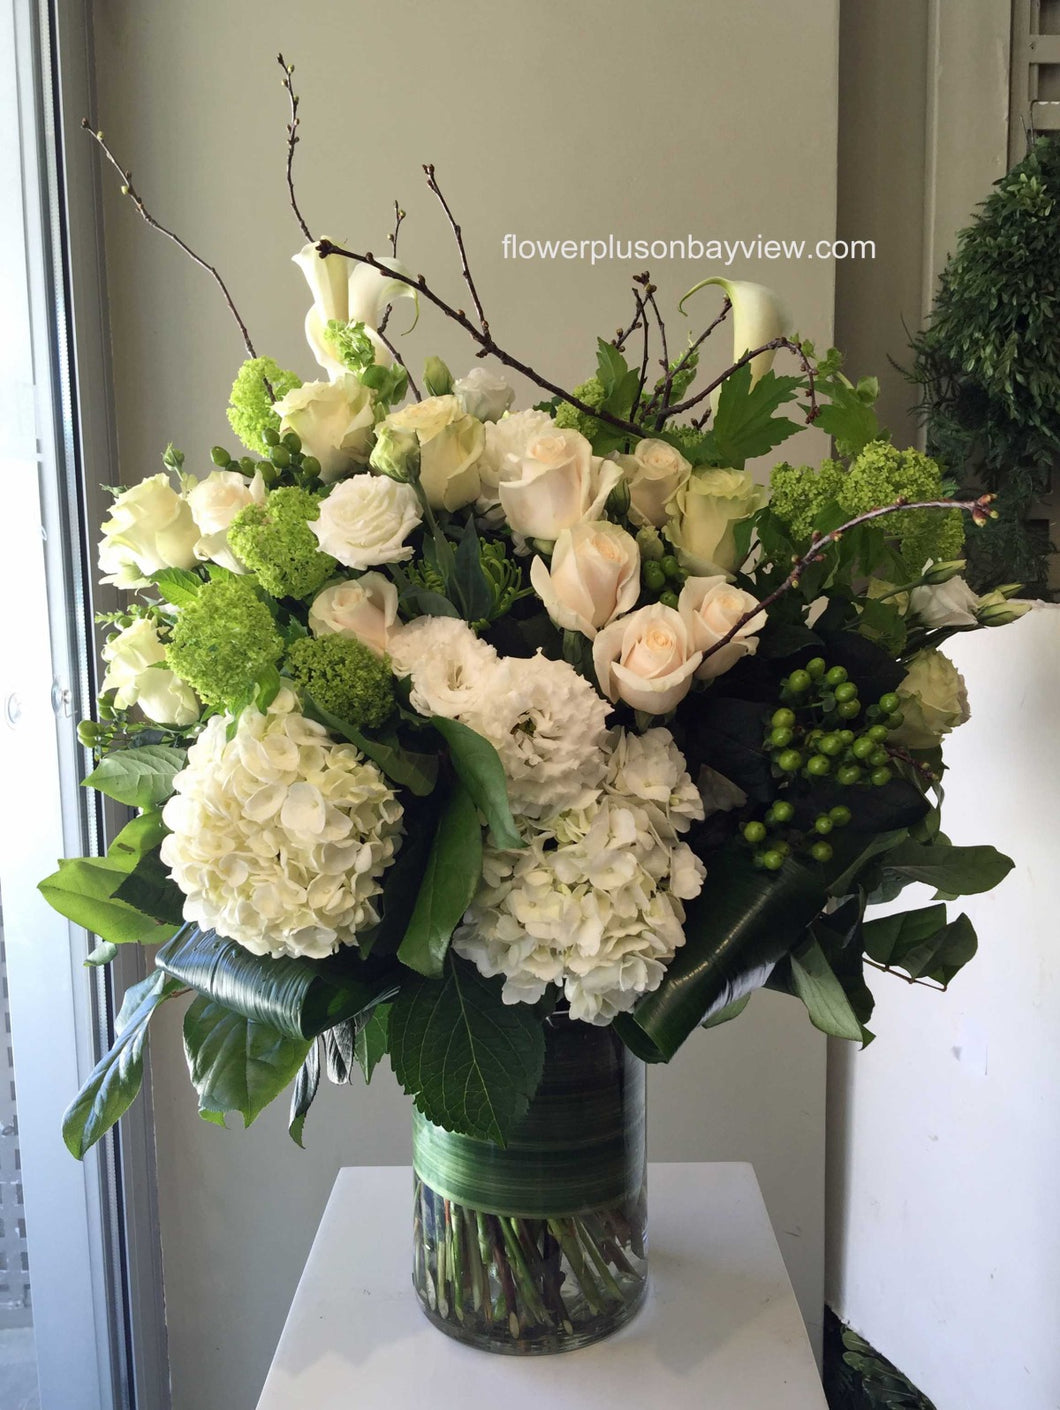 FNV84 - Elegant White and Green Vase Arrangement - Flowerplustoronto